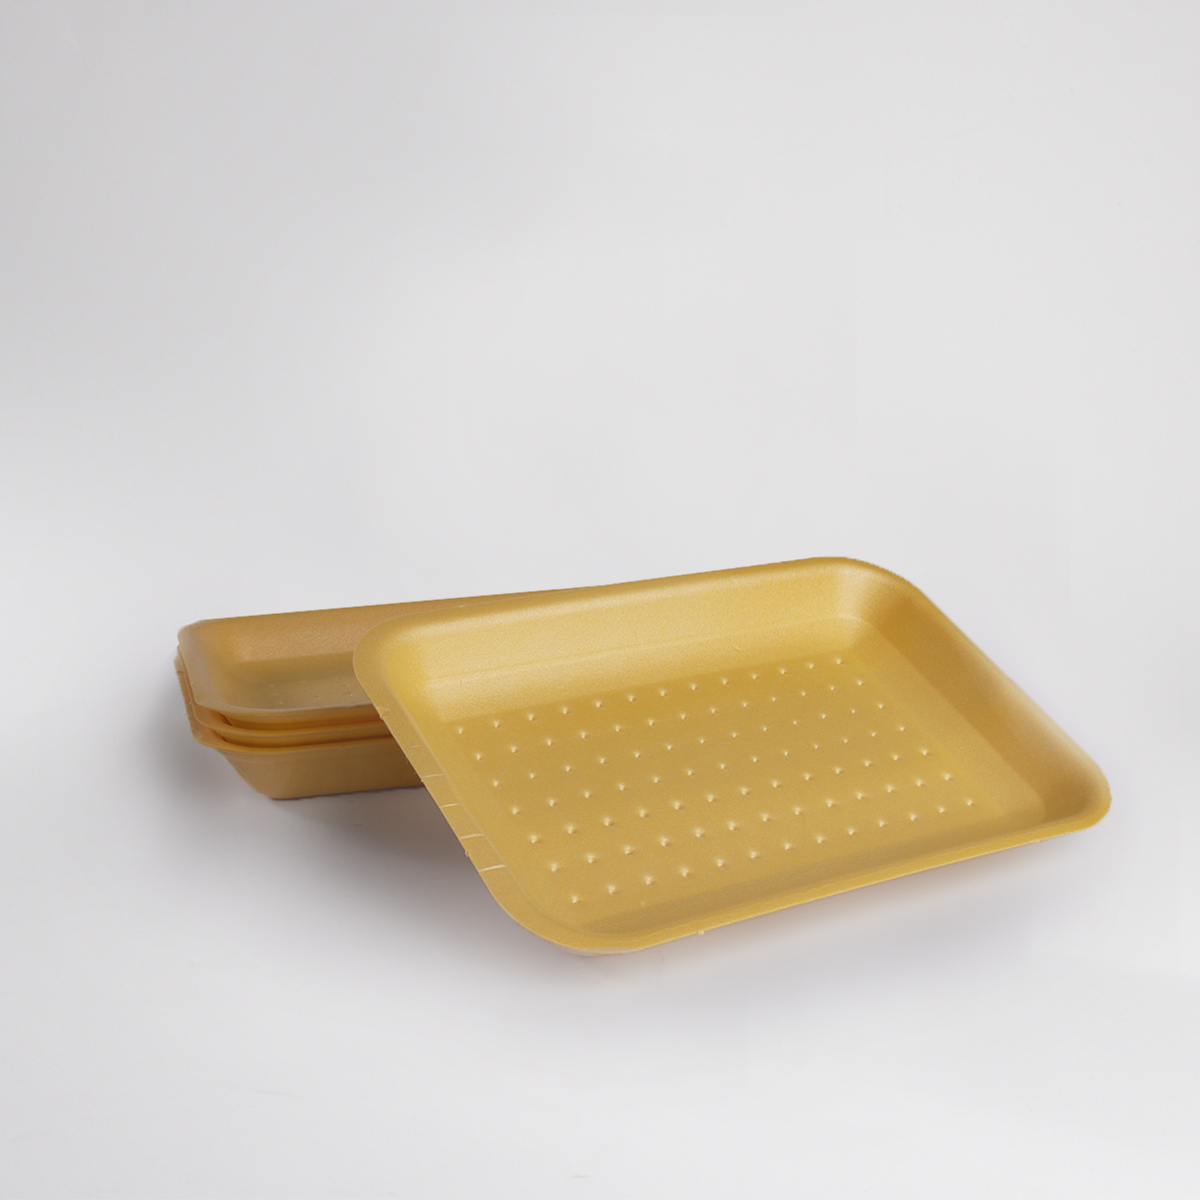 Foam trays (200 pieces)